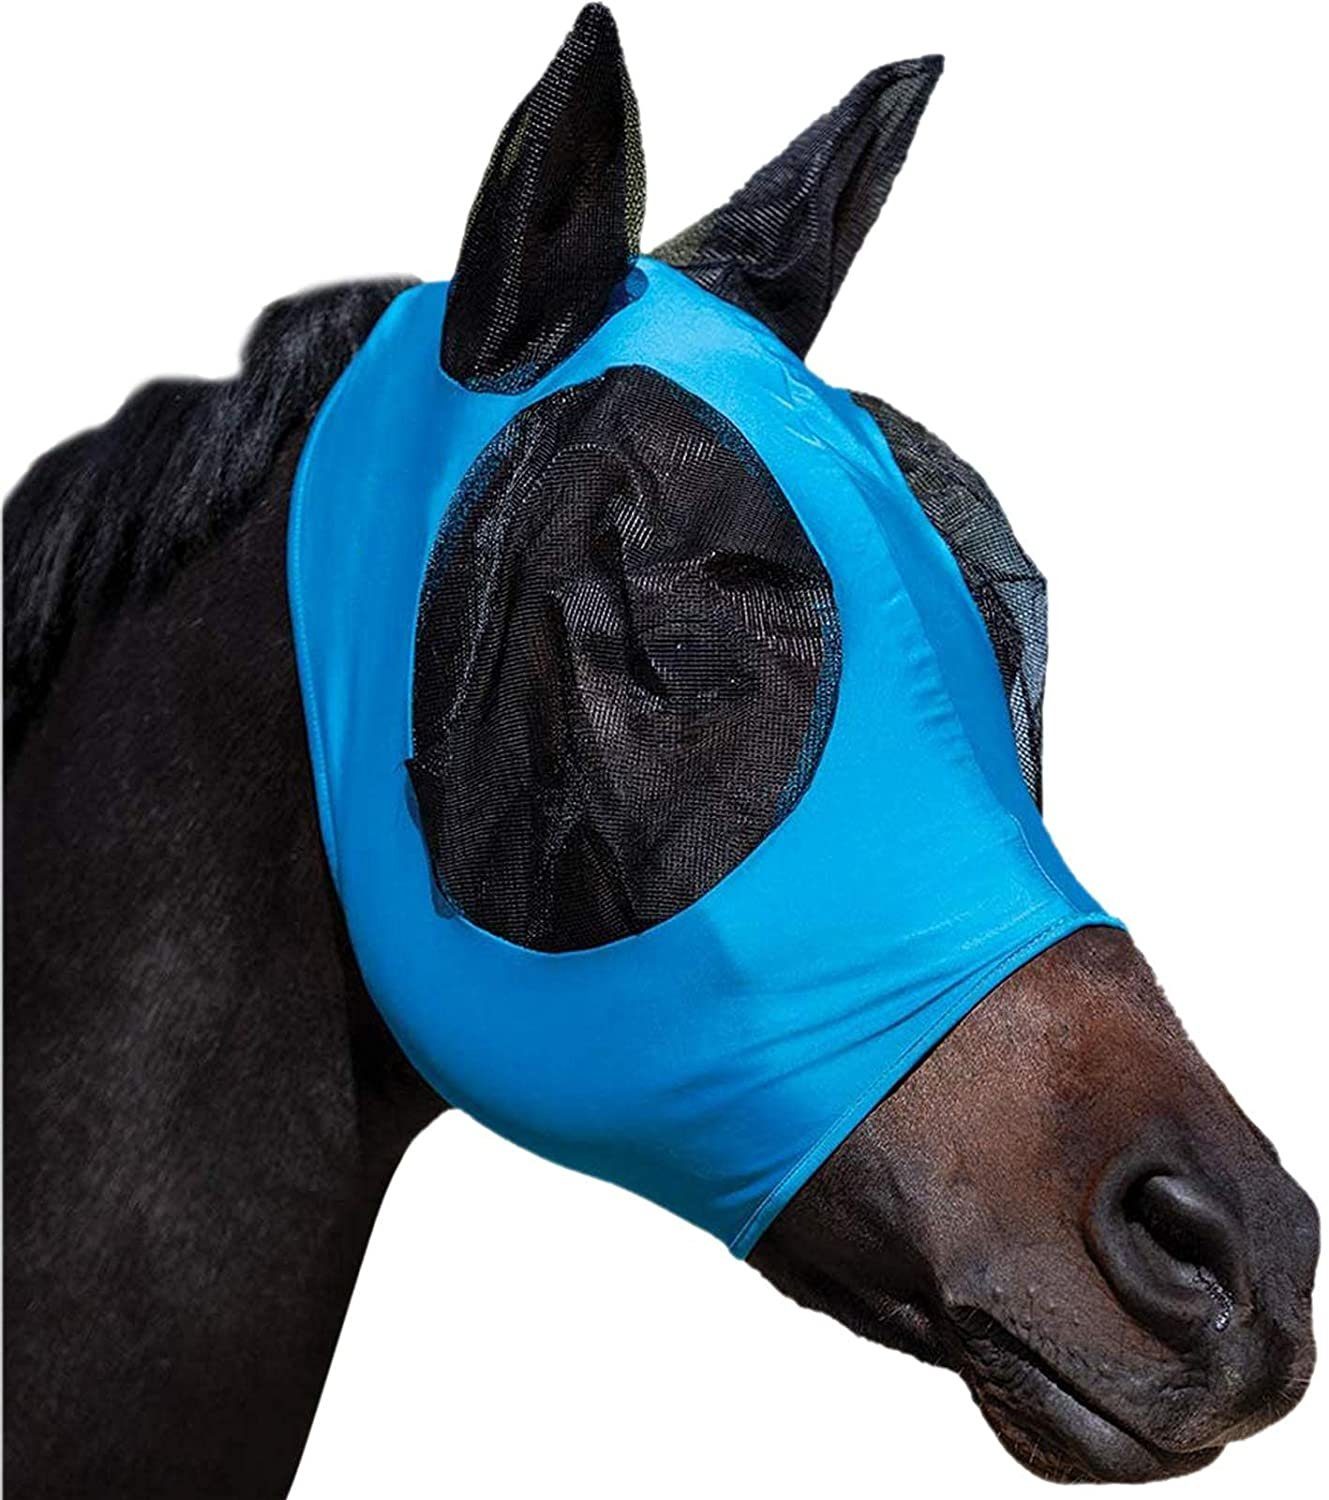 Fliegenmaske Blau Fliegenmasken Hervorragender Zggzerg zggzerg Pferd Komfort